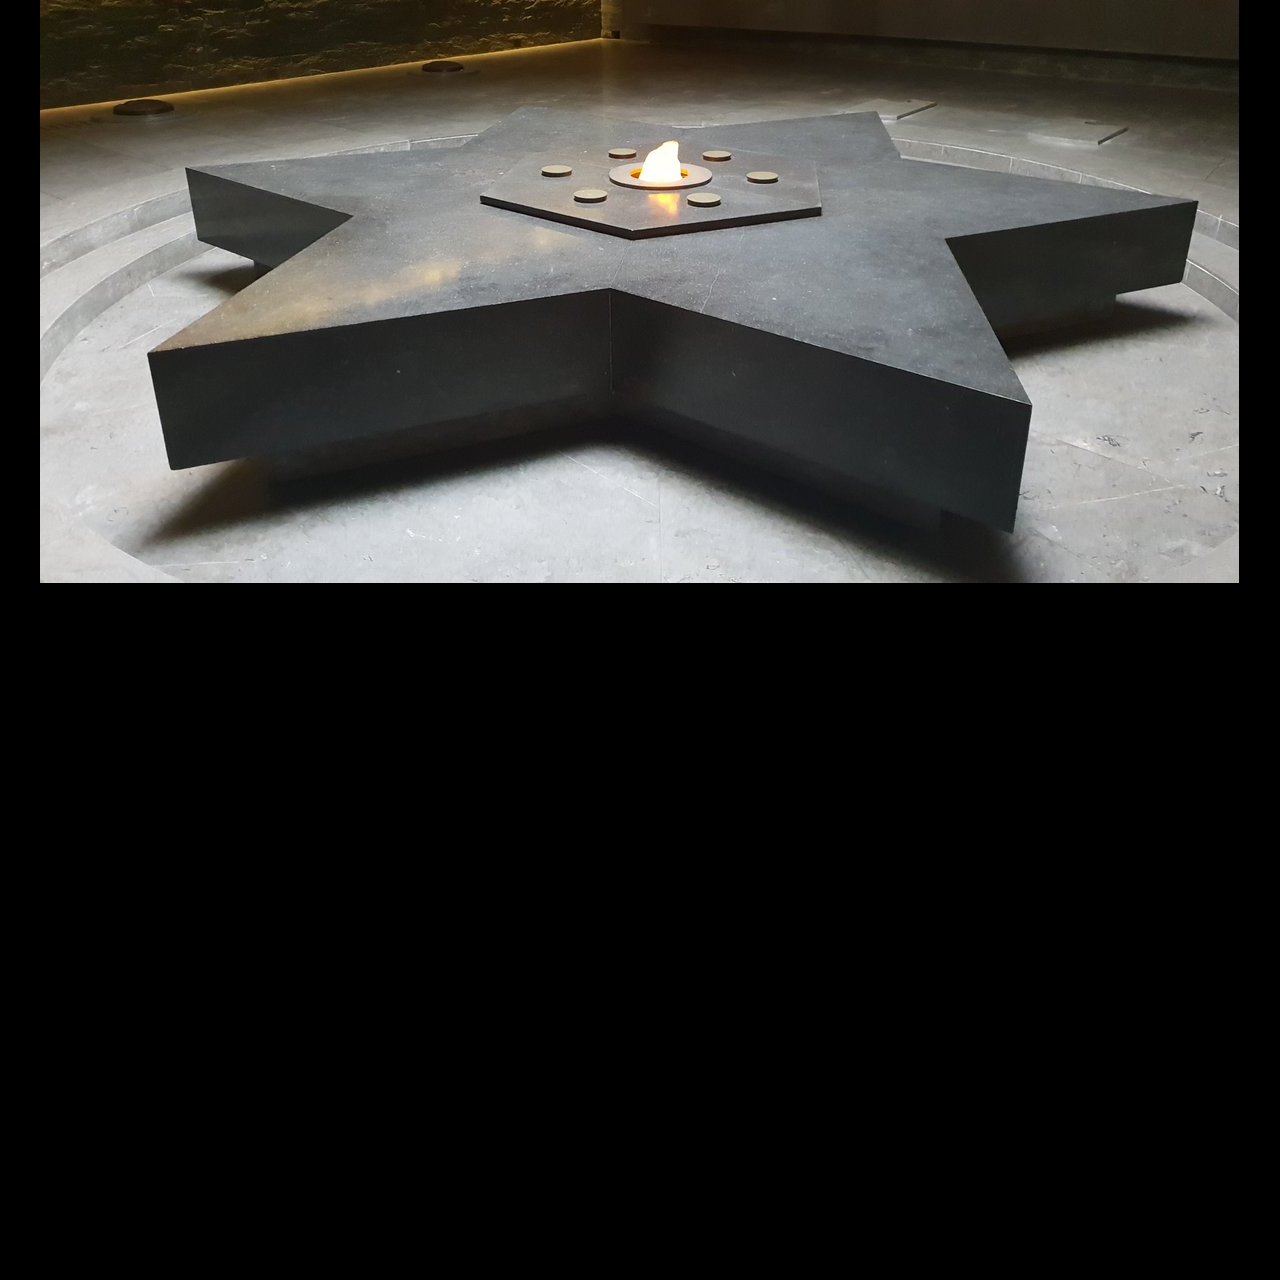 Dans la crypte, la flamme en hommage au martyr juif inconnu